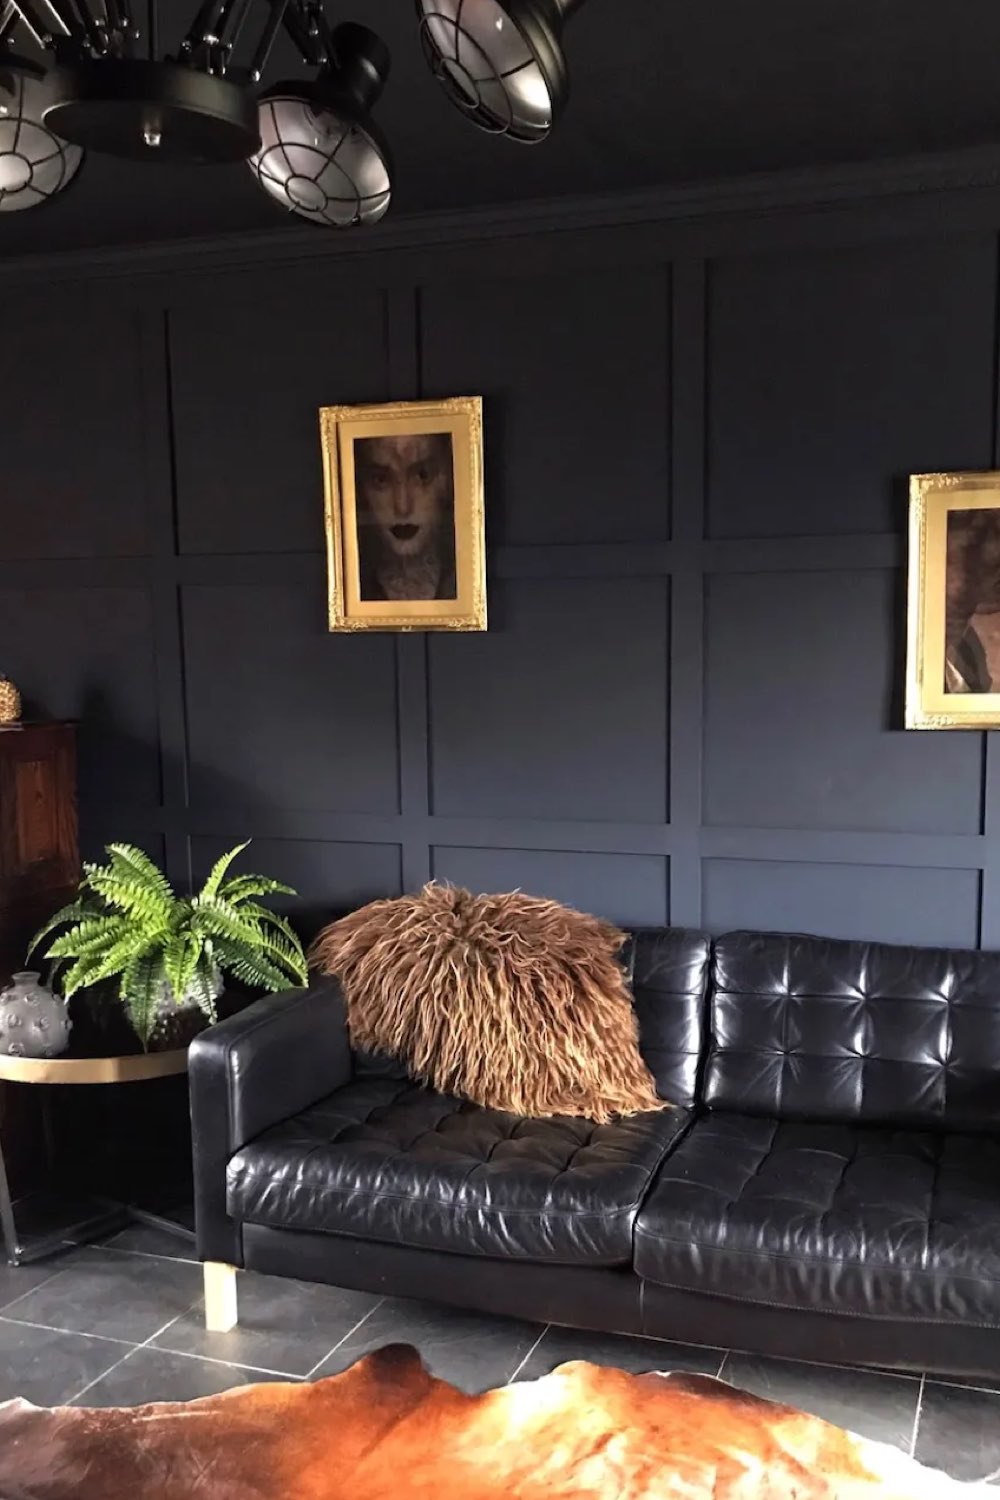 interieur couleur sourde eclectique salon peinture murale noire mat canapé cuir lumineux cadres dorés